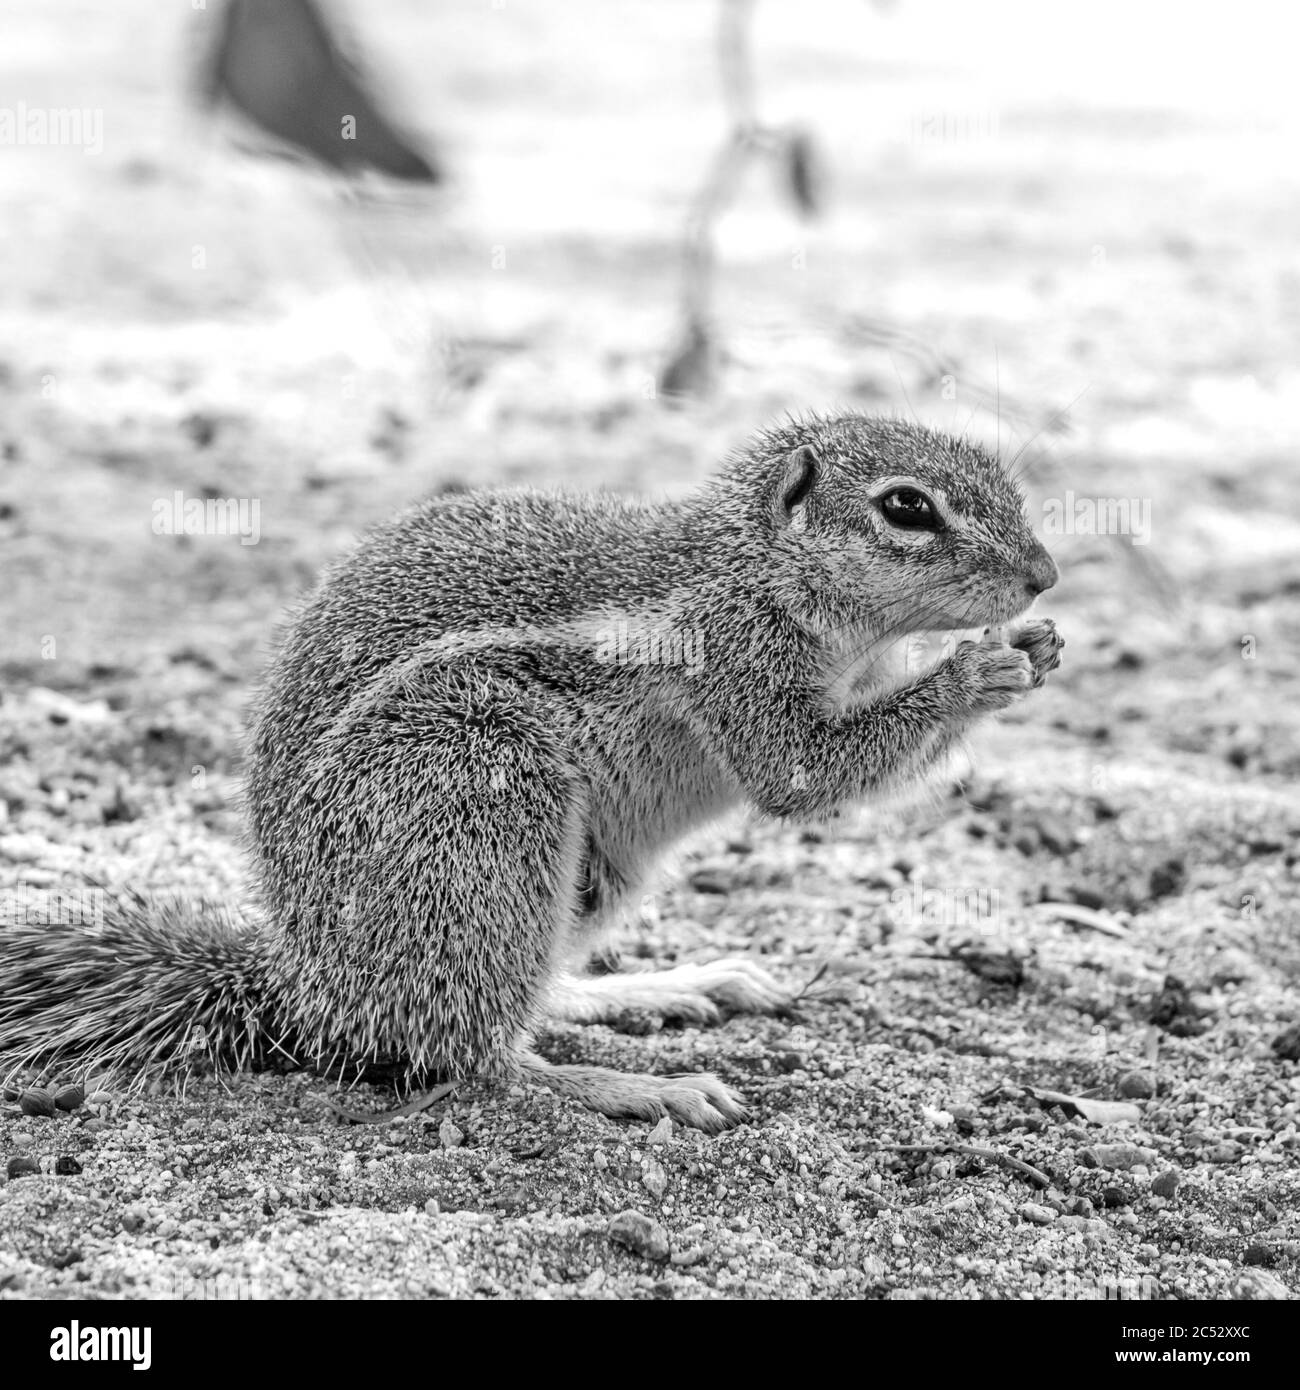 Un écureuil de la terre de cap, Xerus Inauris, en Monochrome, dans le terrain de camp du Parc national des Augrabies, Cap Nord, Afrique du Sud Banque D'Images